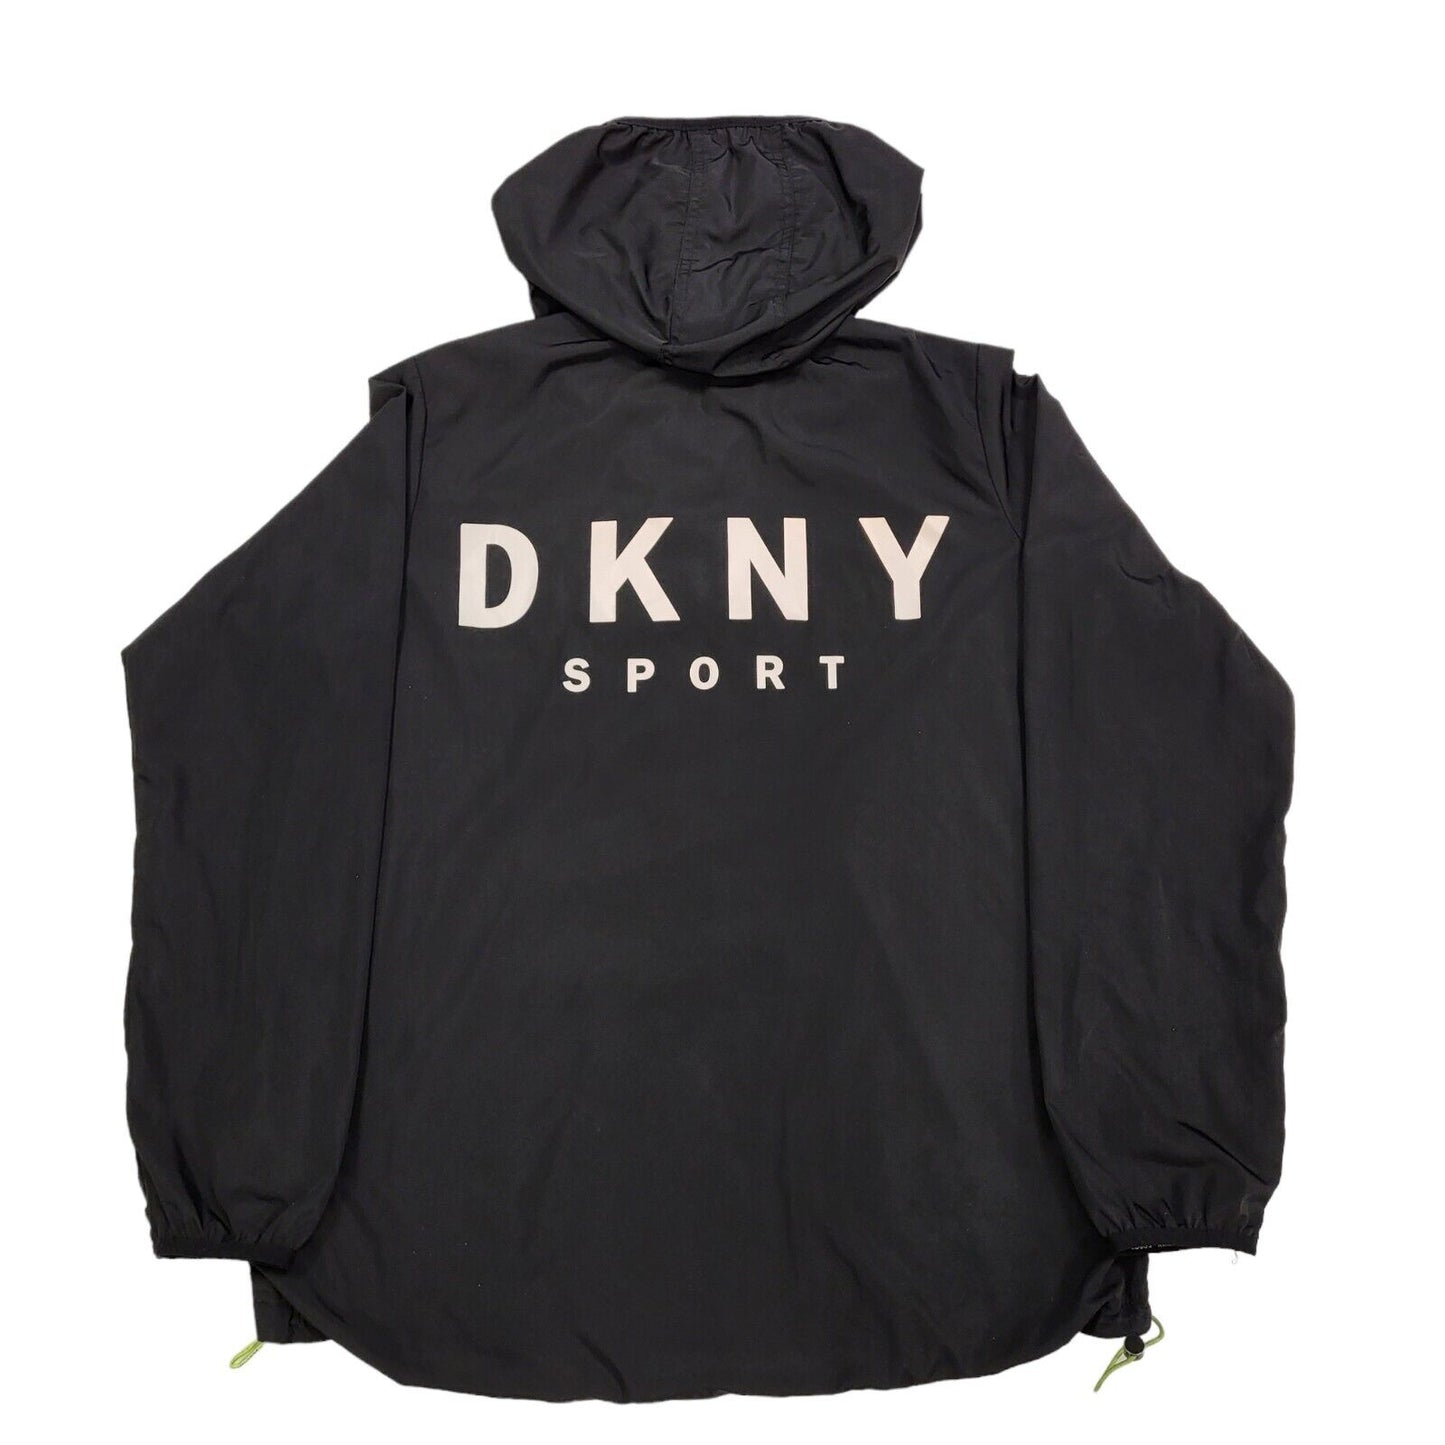 DKNY Jacket S